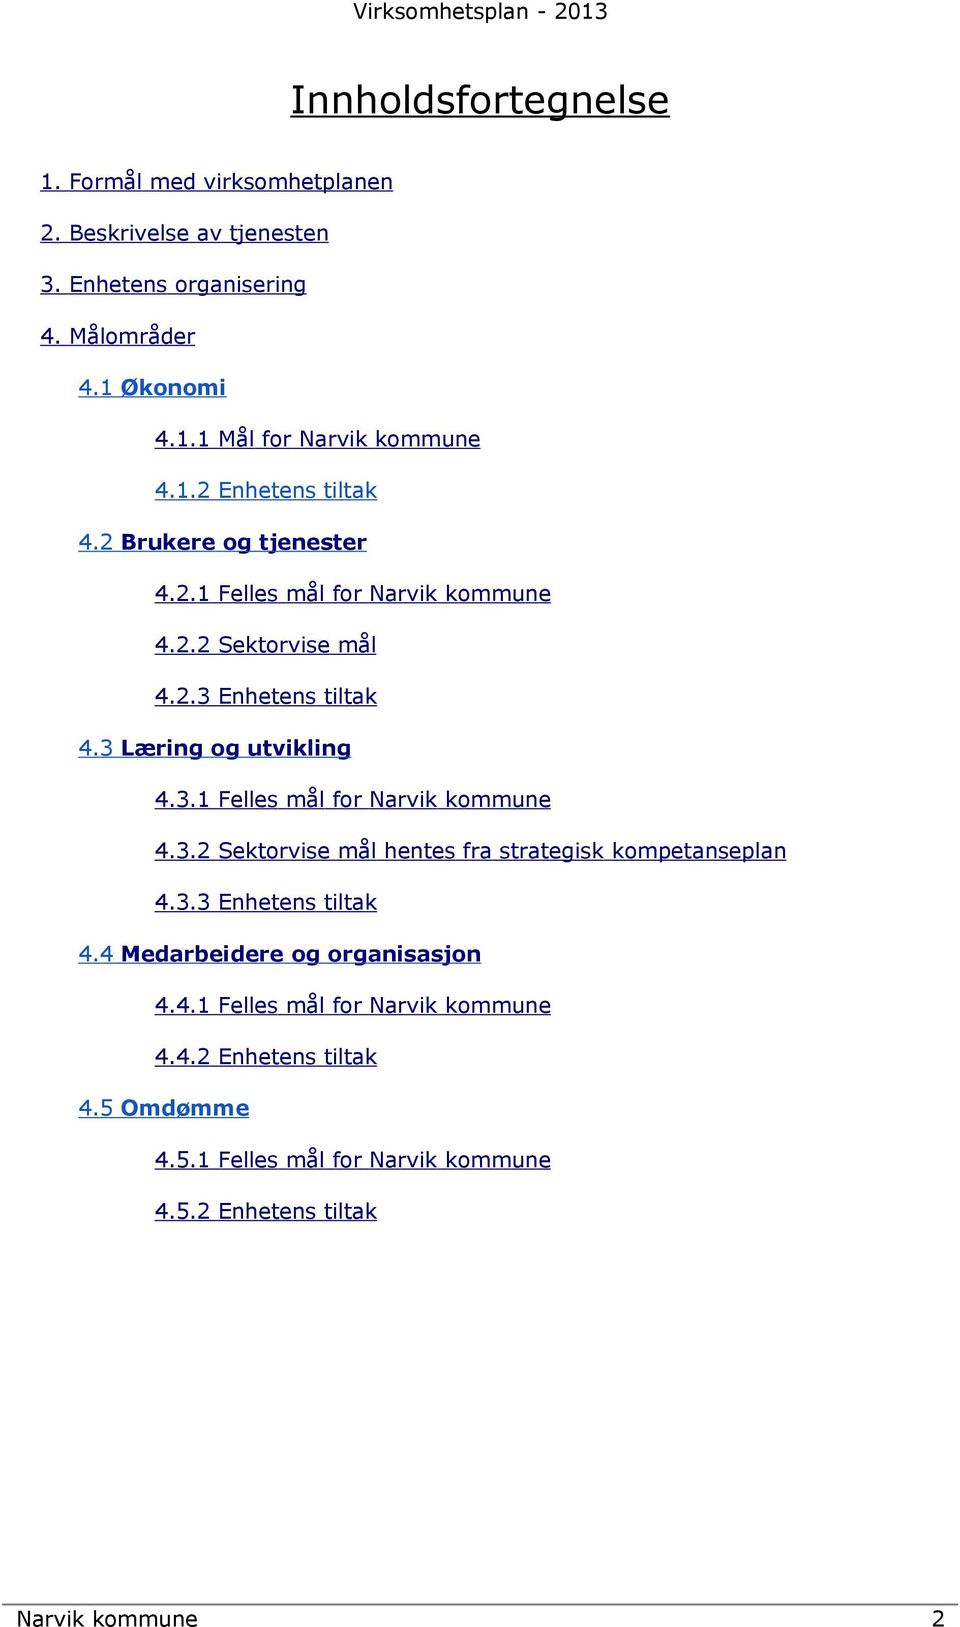 3.1 Felles mål for Narvik kommune 4.3.2 Sektorvise mål hentes fra strategisk kompetanseplan 4.3.3 Enhetens tiltak 4.4 Medarbeidere og organisasjon 4.4.1 Felles mål for Narvik kommune 4.4.2 Enhetens tiltak 4.